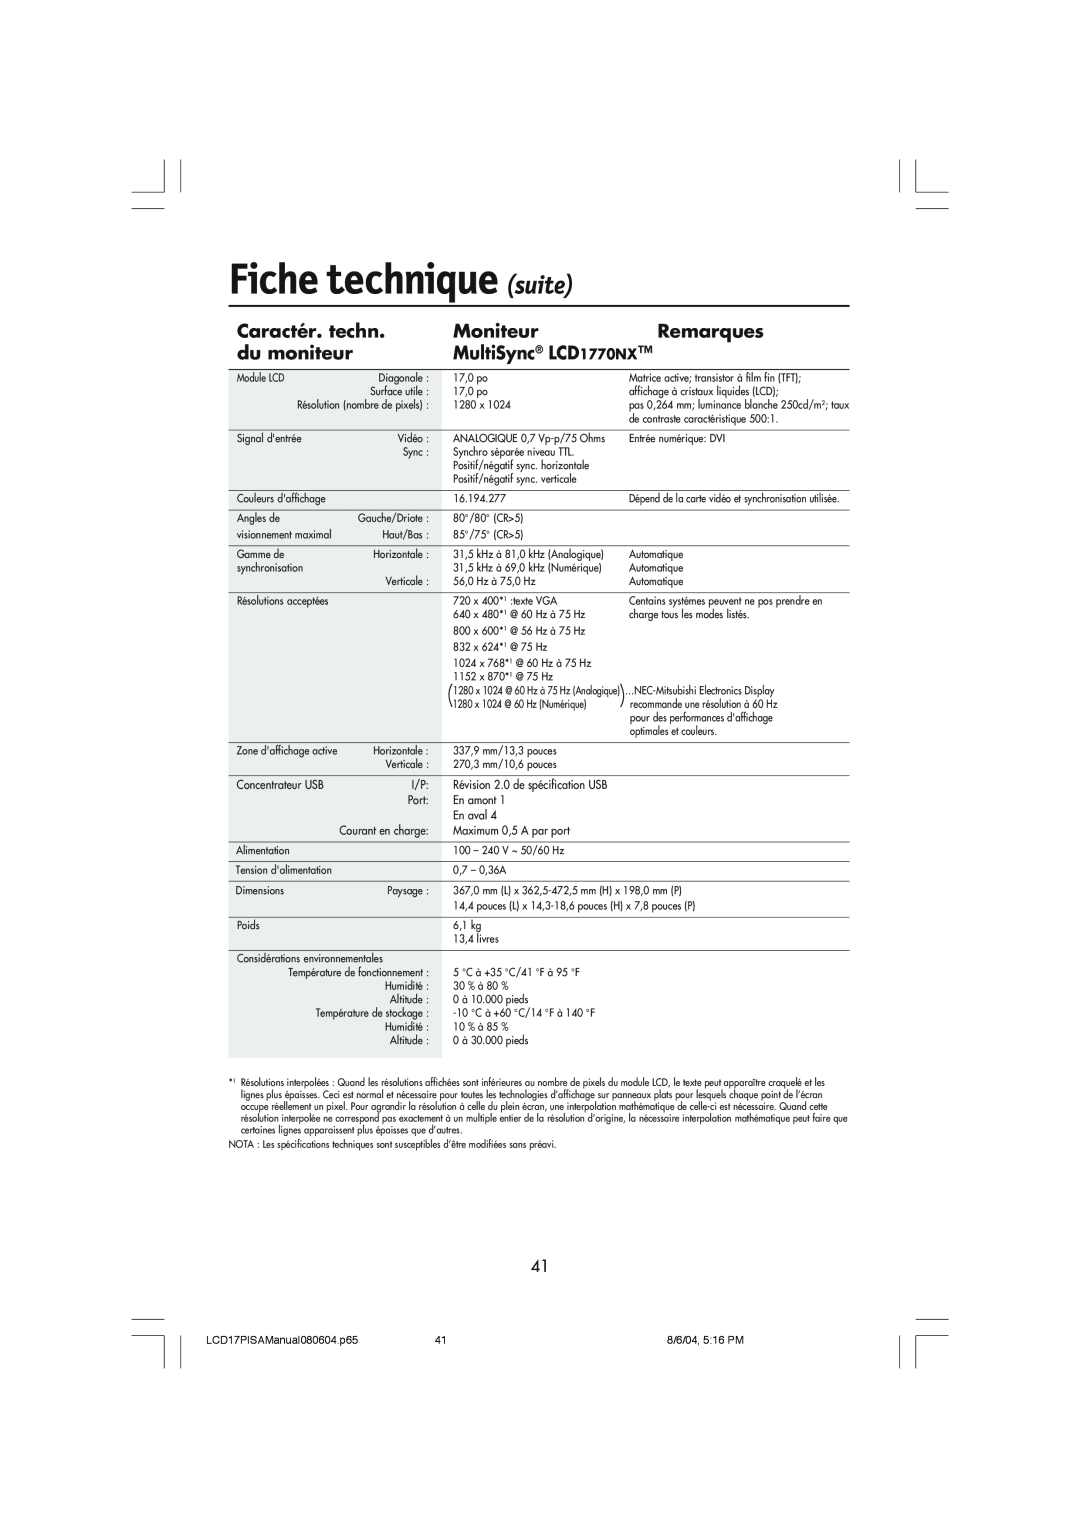 NEC LCD1770V, LCD1770NX, LCD1770NXM user manual Fiche technique suite, Caractér. techn, Moniteur, Remarques, du moniteur 